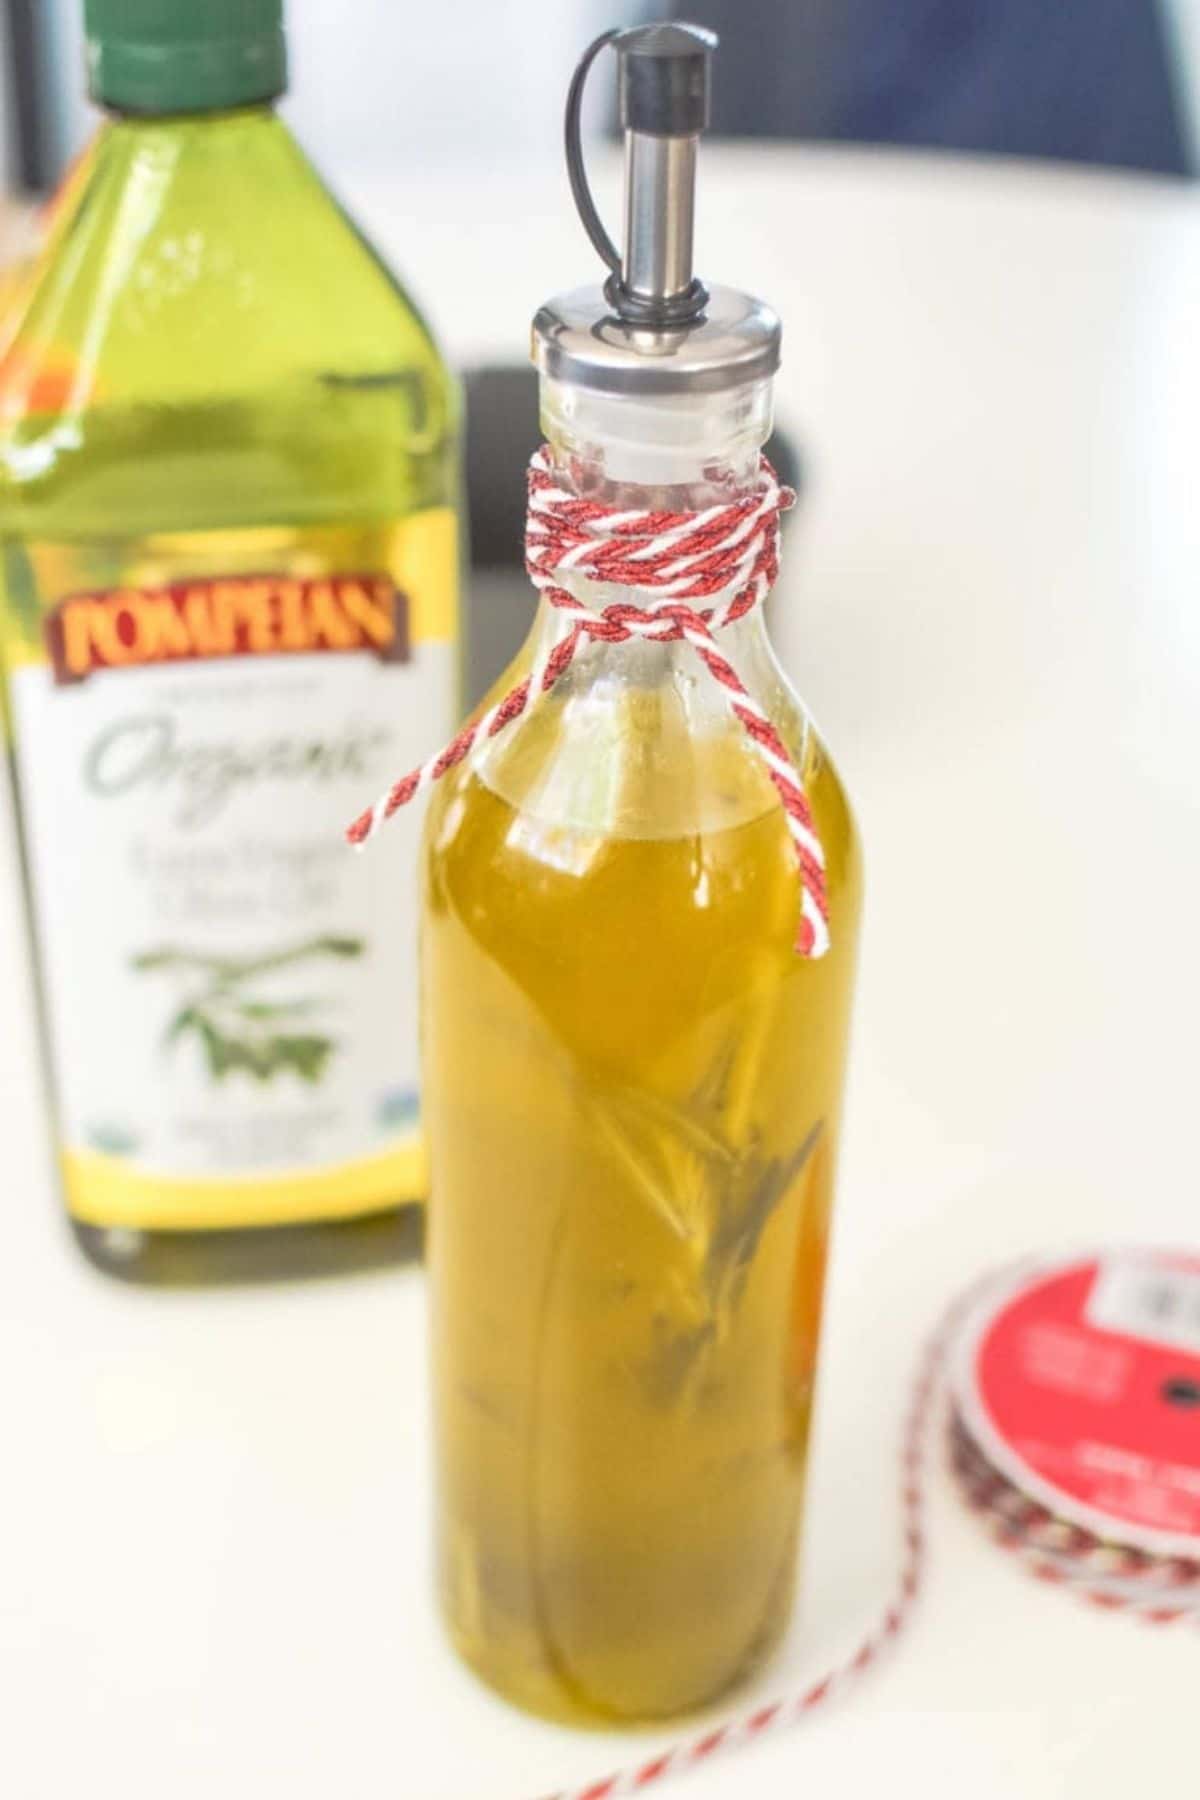 Jar of olive oil